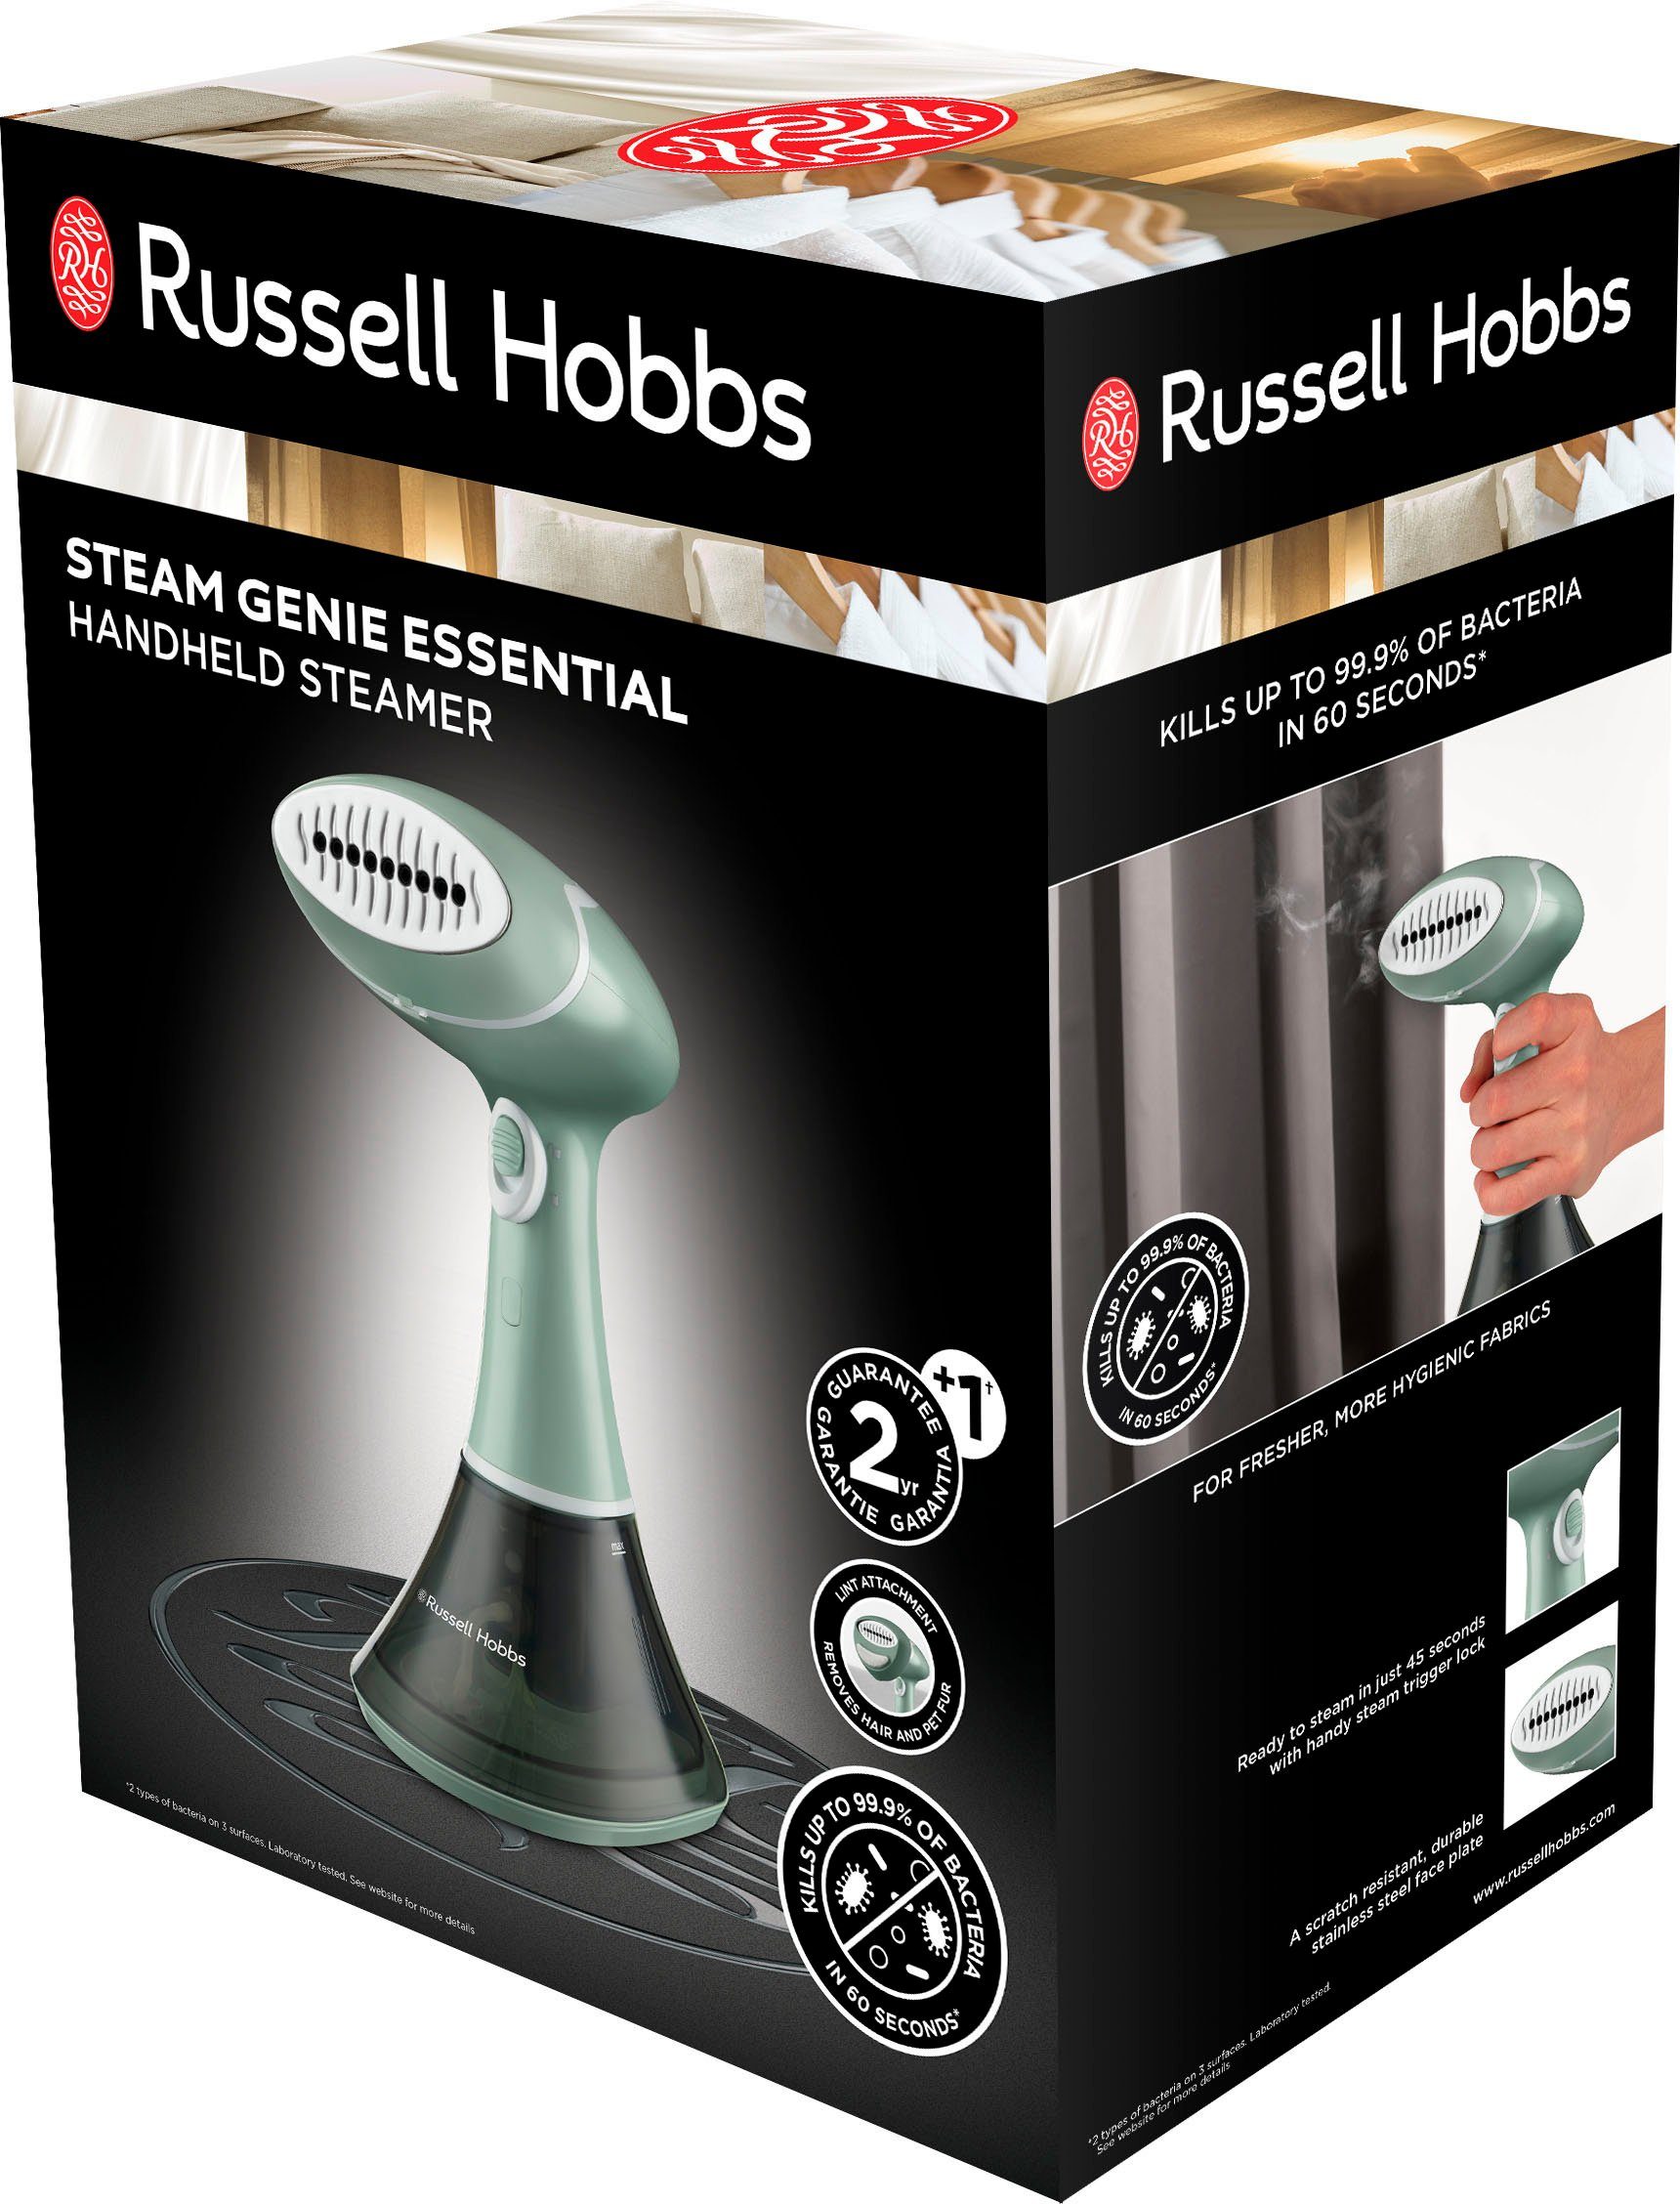 RUSSELL HOBBS Dampfbürste Steam Bügelbrett Genie W, erforderlich kein oder 1600 Essential, Bügeleisen